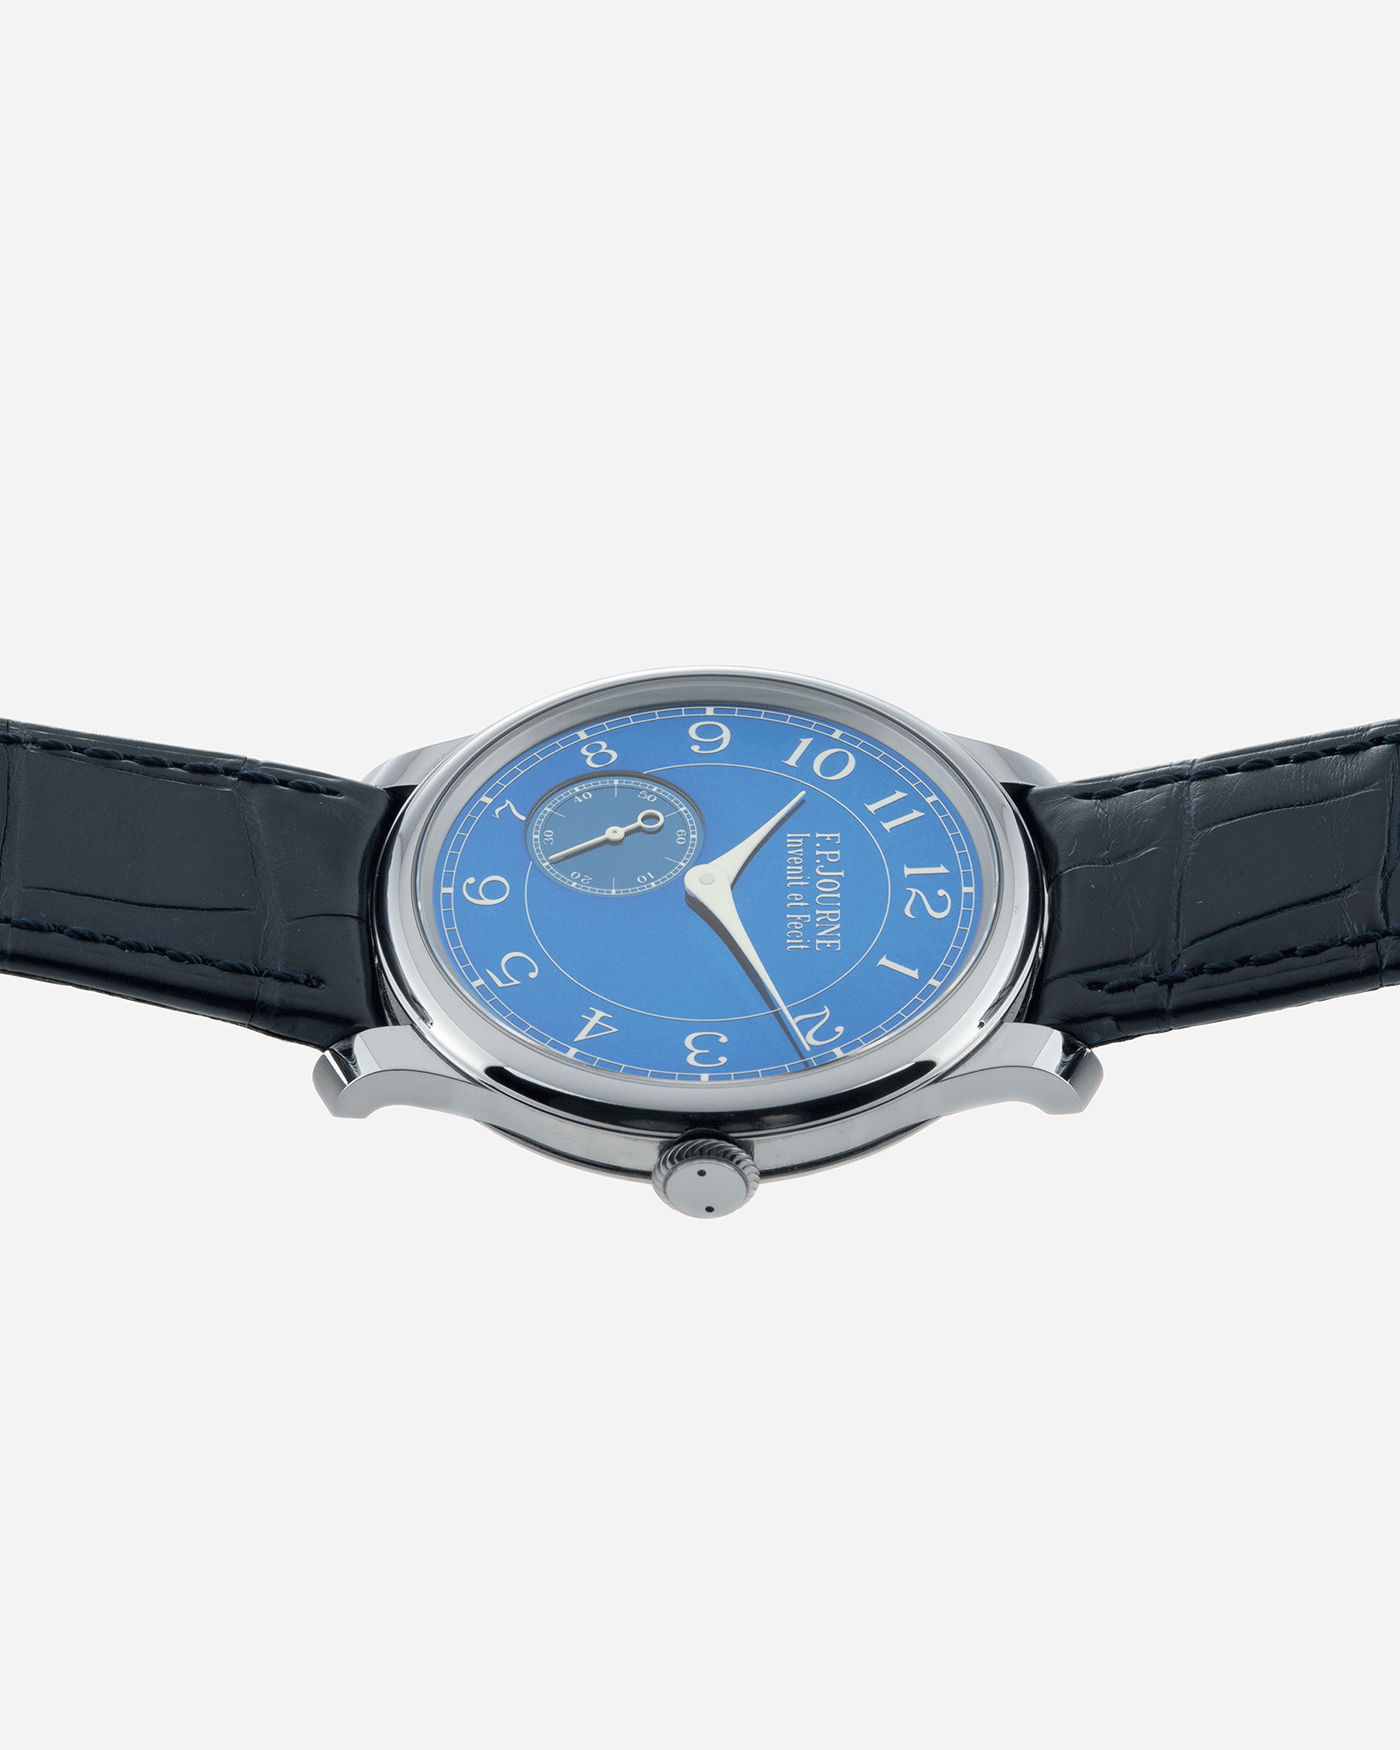 F.P. Journe Chronometre Bleu